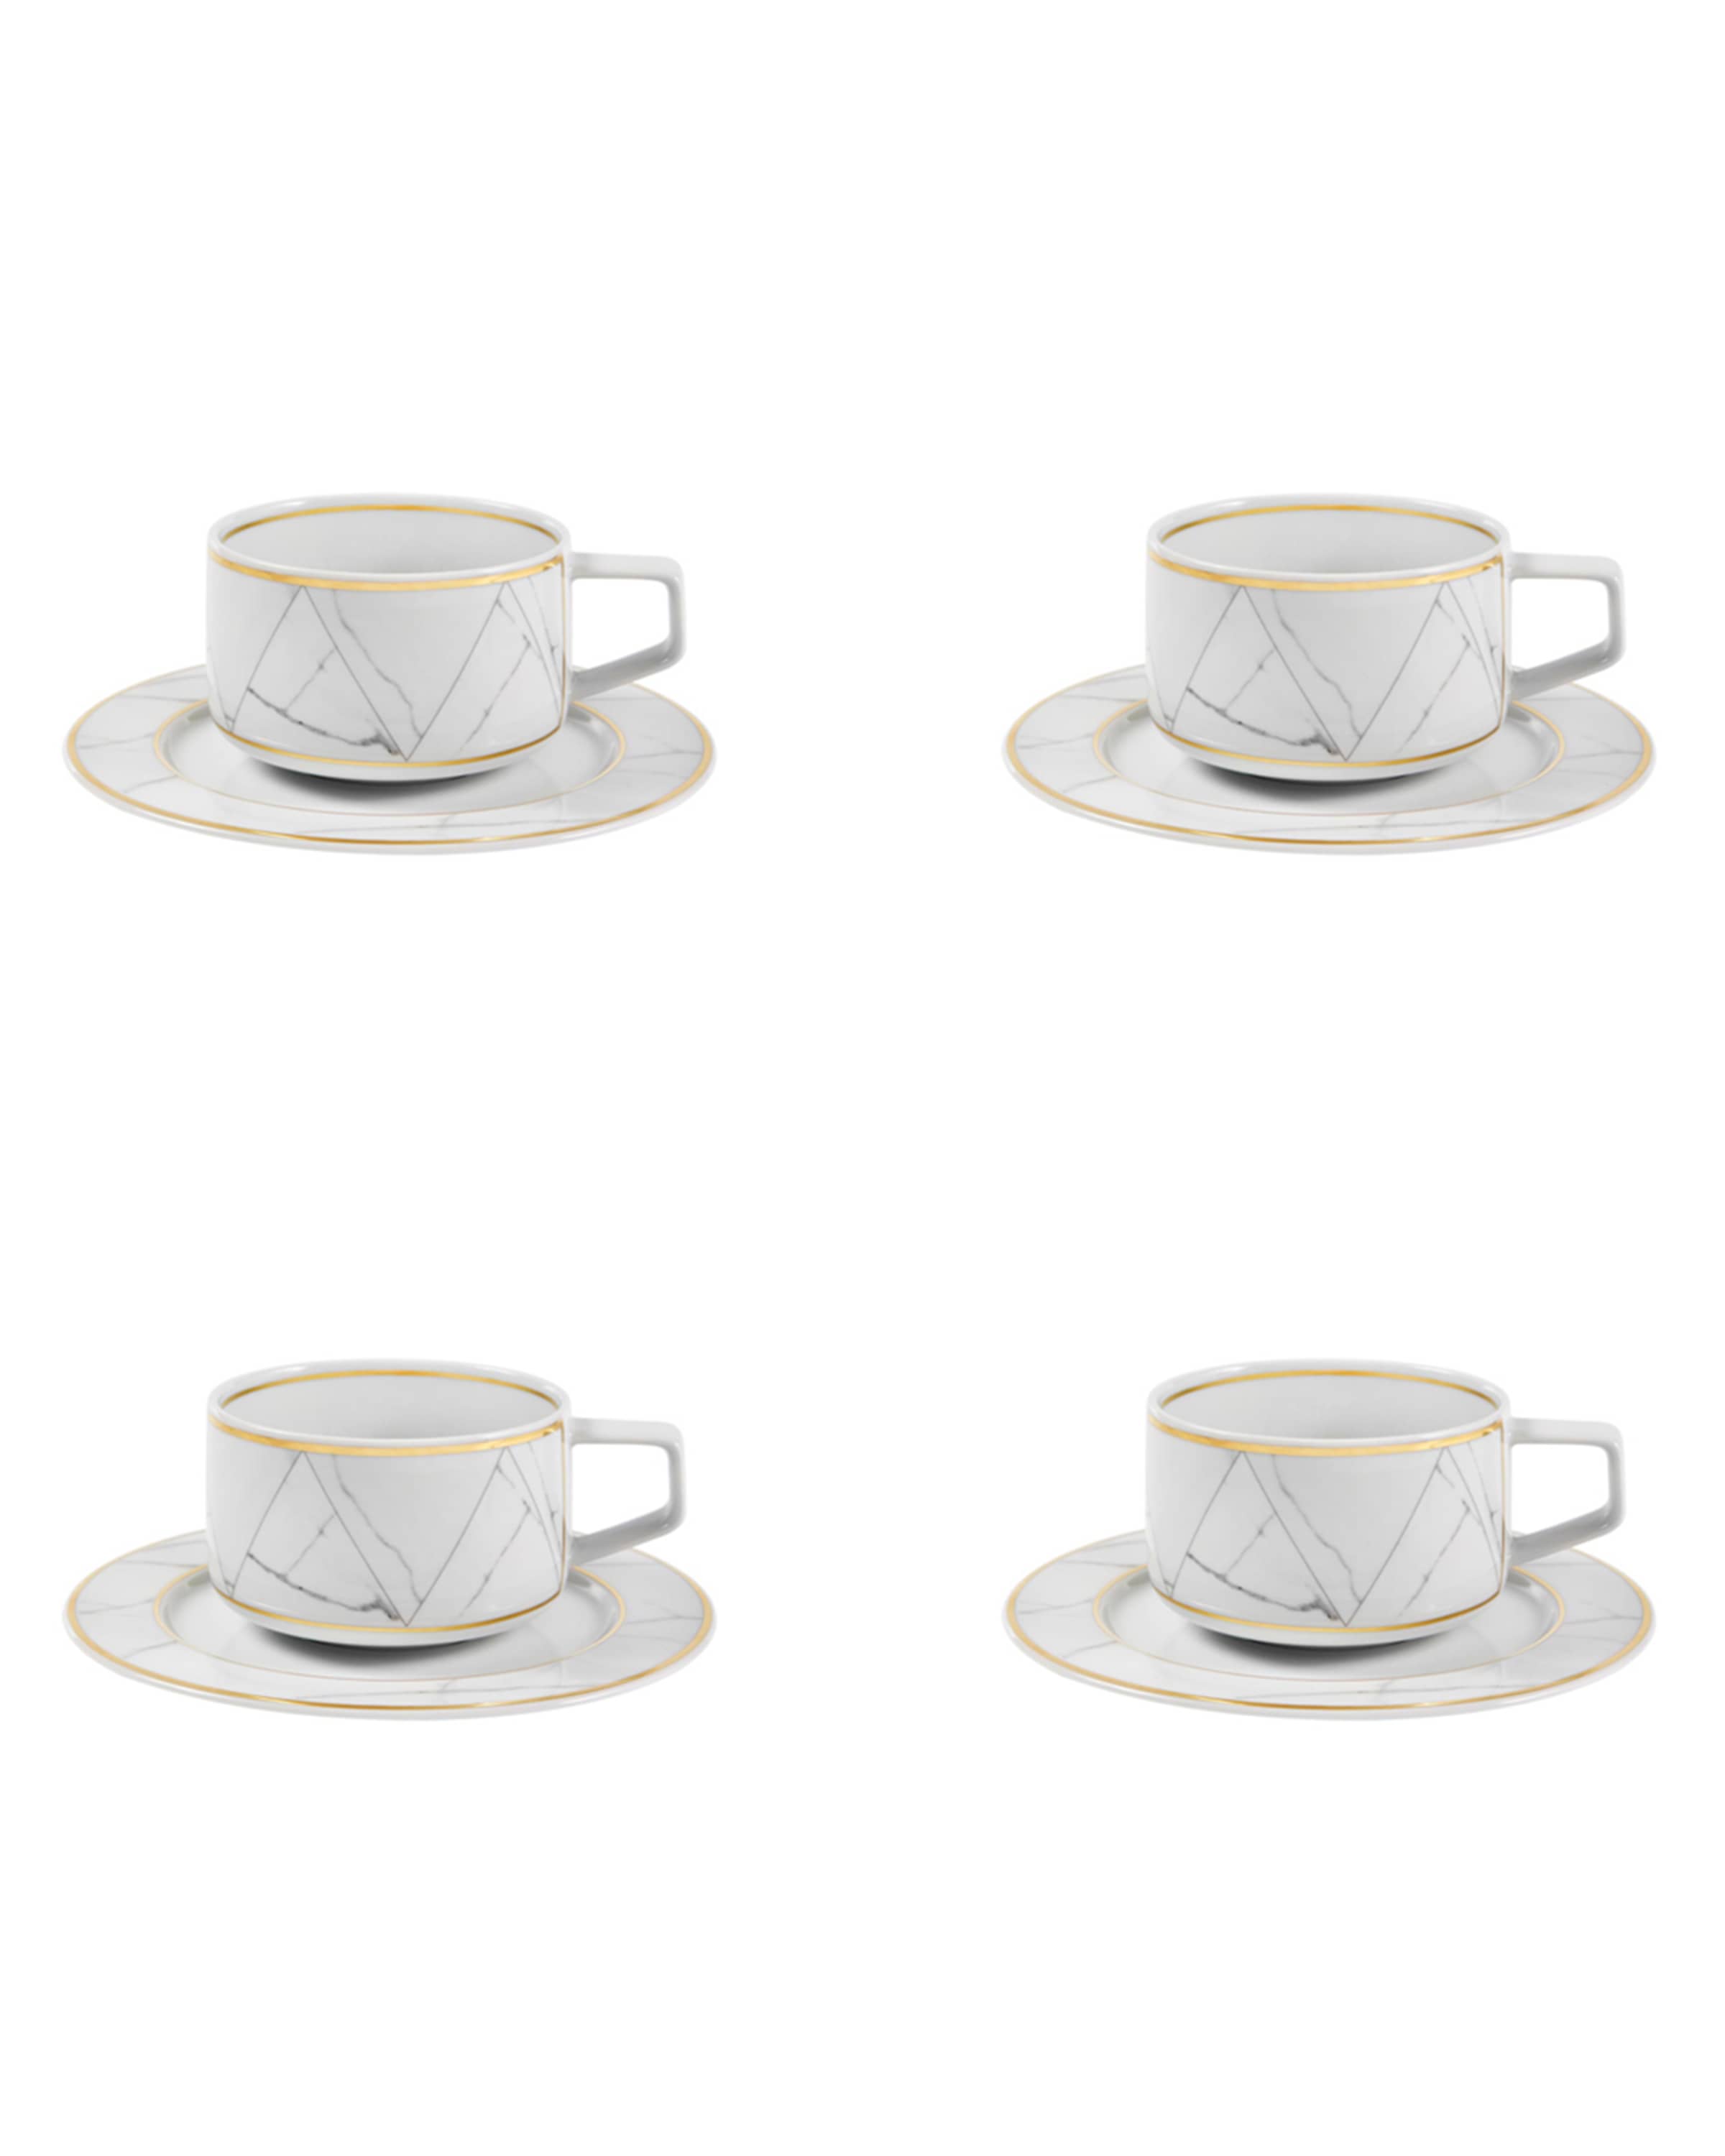 Vista Alegre Carrara Teacups And Saucers, Set of Four